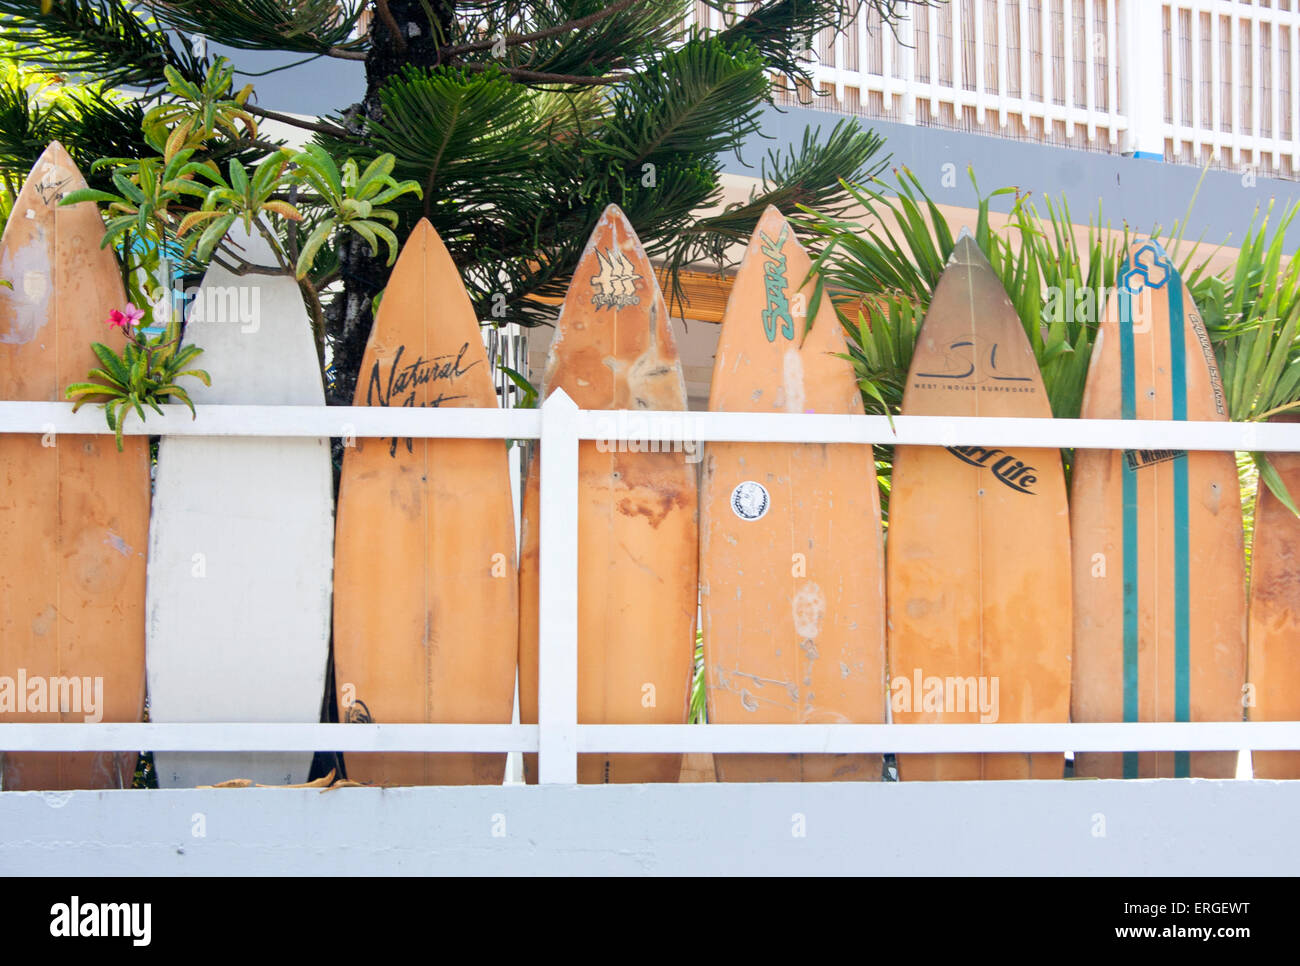 Surfbretter säumen den Zaun eines Hauses im Stadtteil Corossol St. Barts Stockfoto